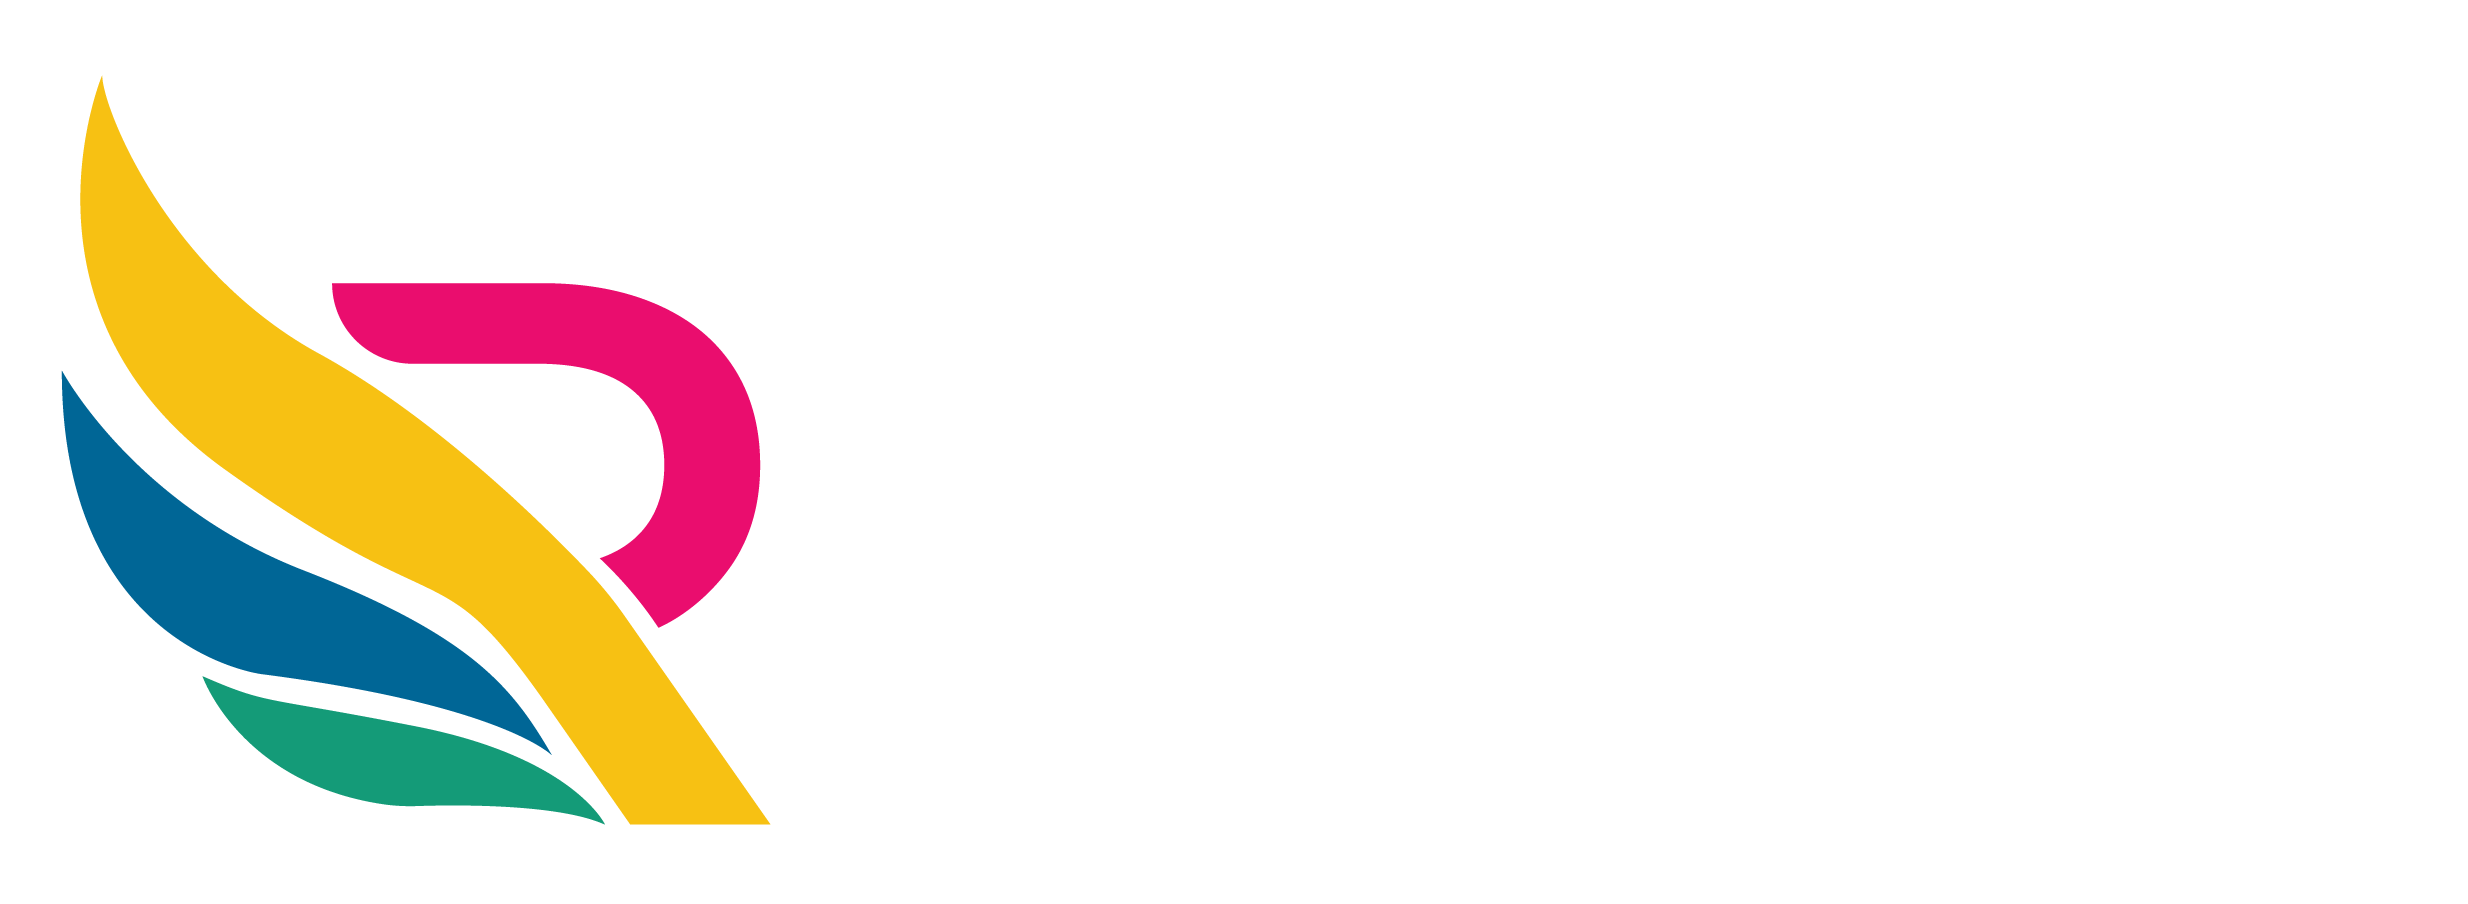 Rita Bautista